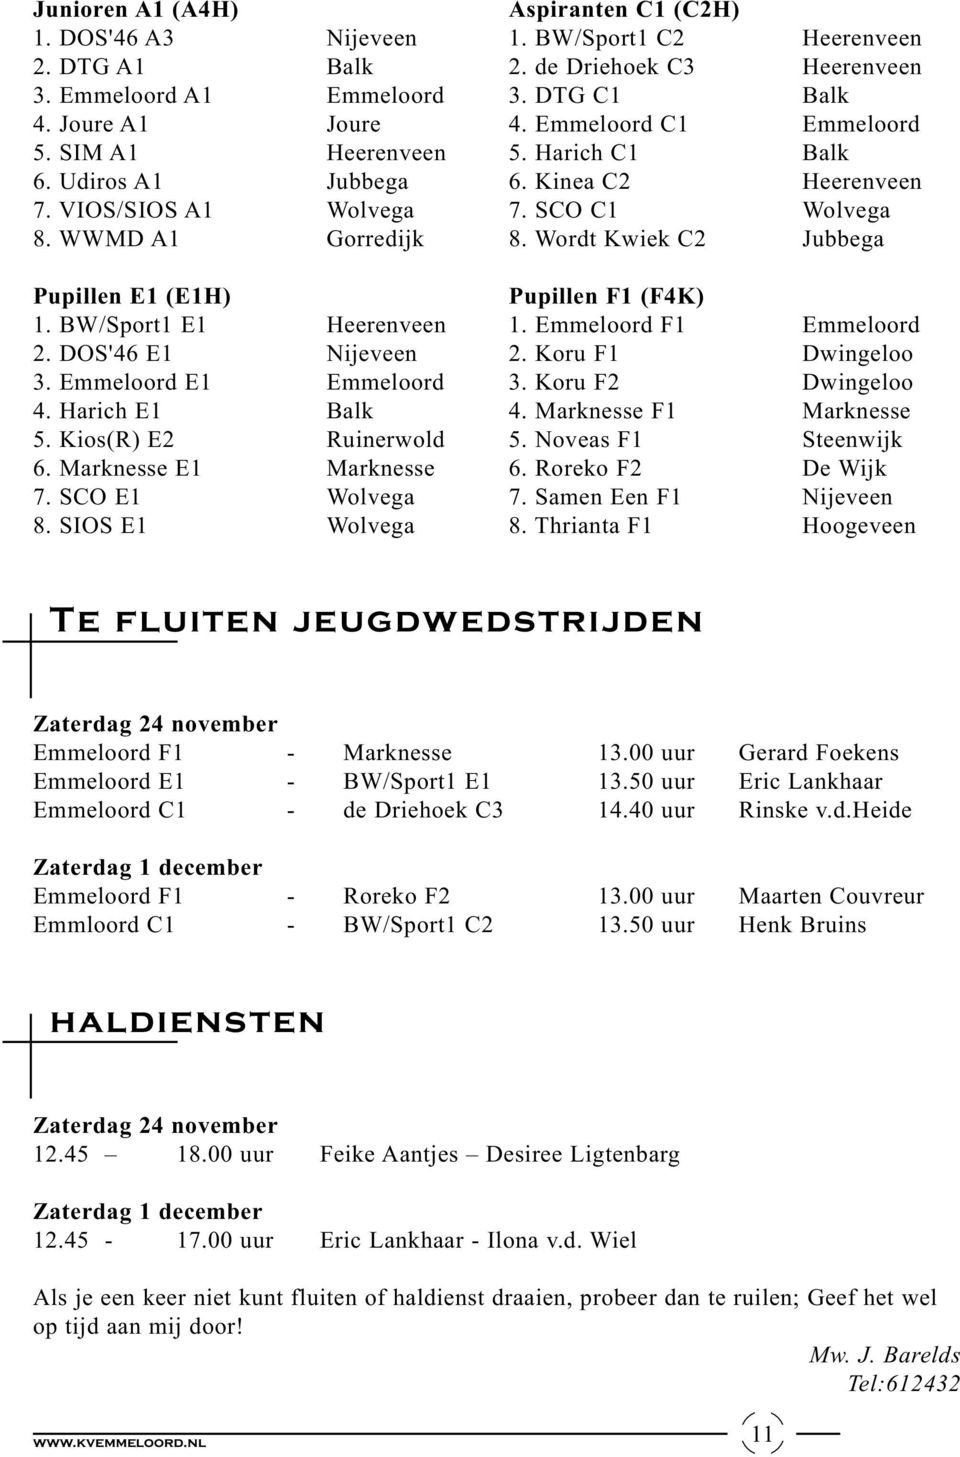 SIOS E1 Wolvega Aspiranten C1 (C2H) 1. BW/Sport1 C2 Heerenveen 2. de Driehoek C3 Heerenveen 3. DTG C1 Balk 4. Emmeloord C1 Emmeloord 5. Harich C1 Balk 6. Kinea C2 Heerenveen 7. SCO C1 Wolvega 8.